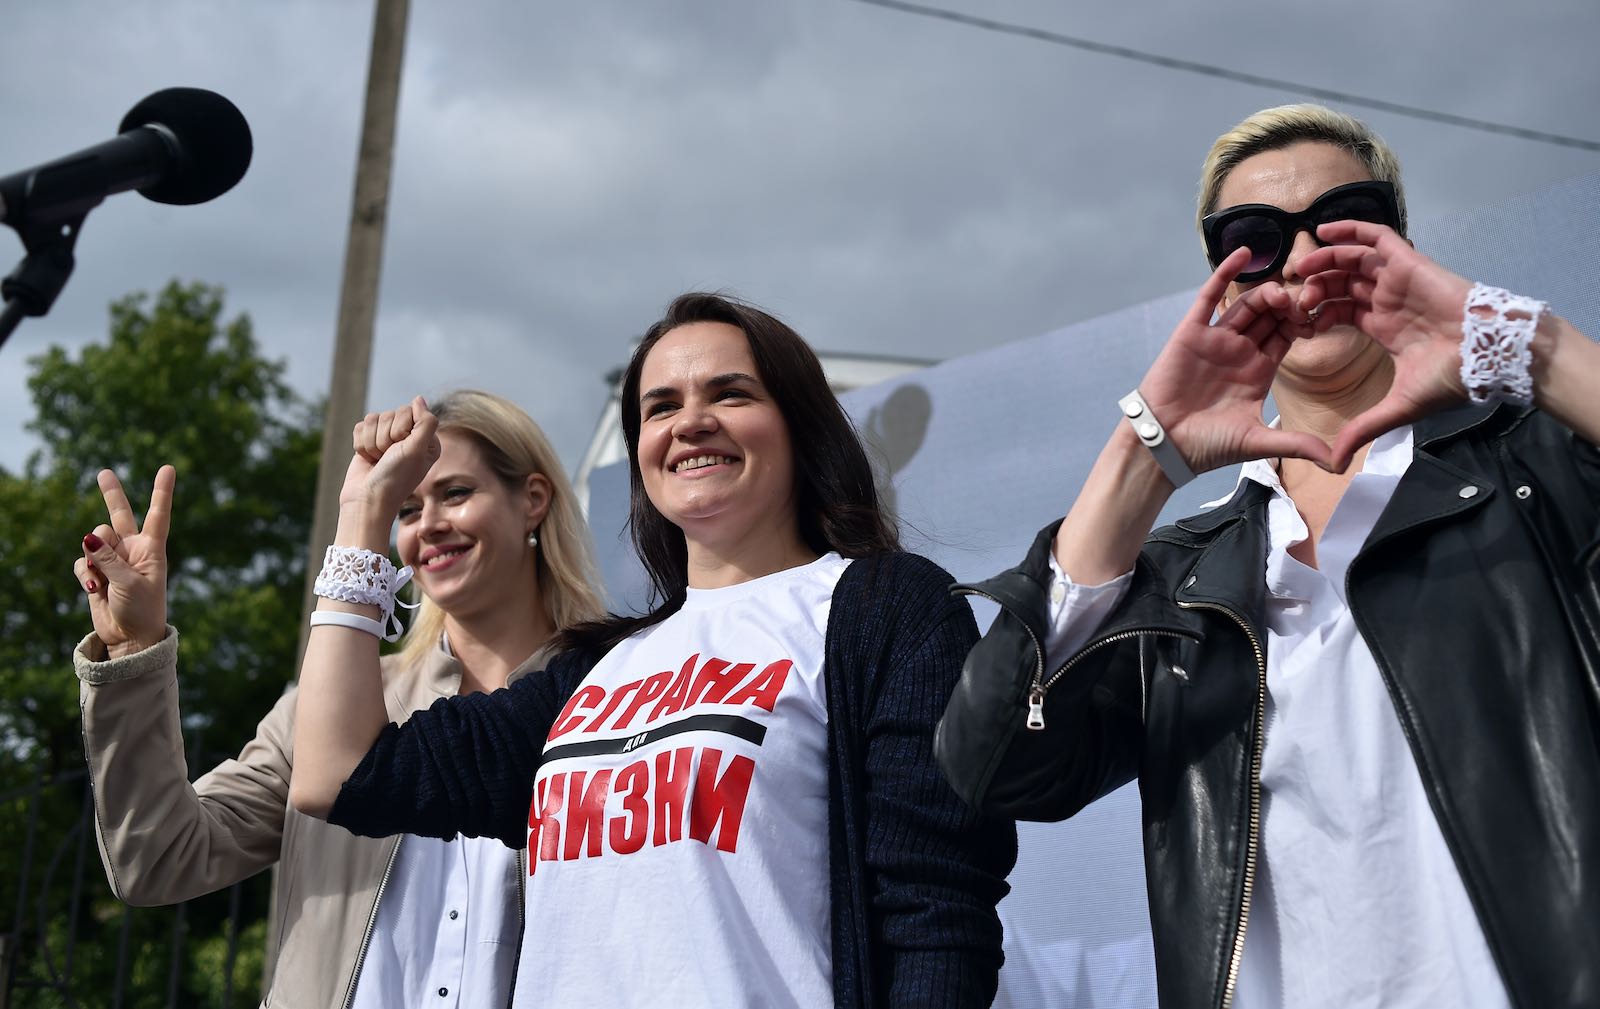 Women opposition leaders in Belarus